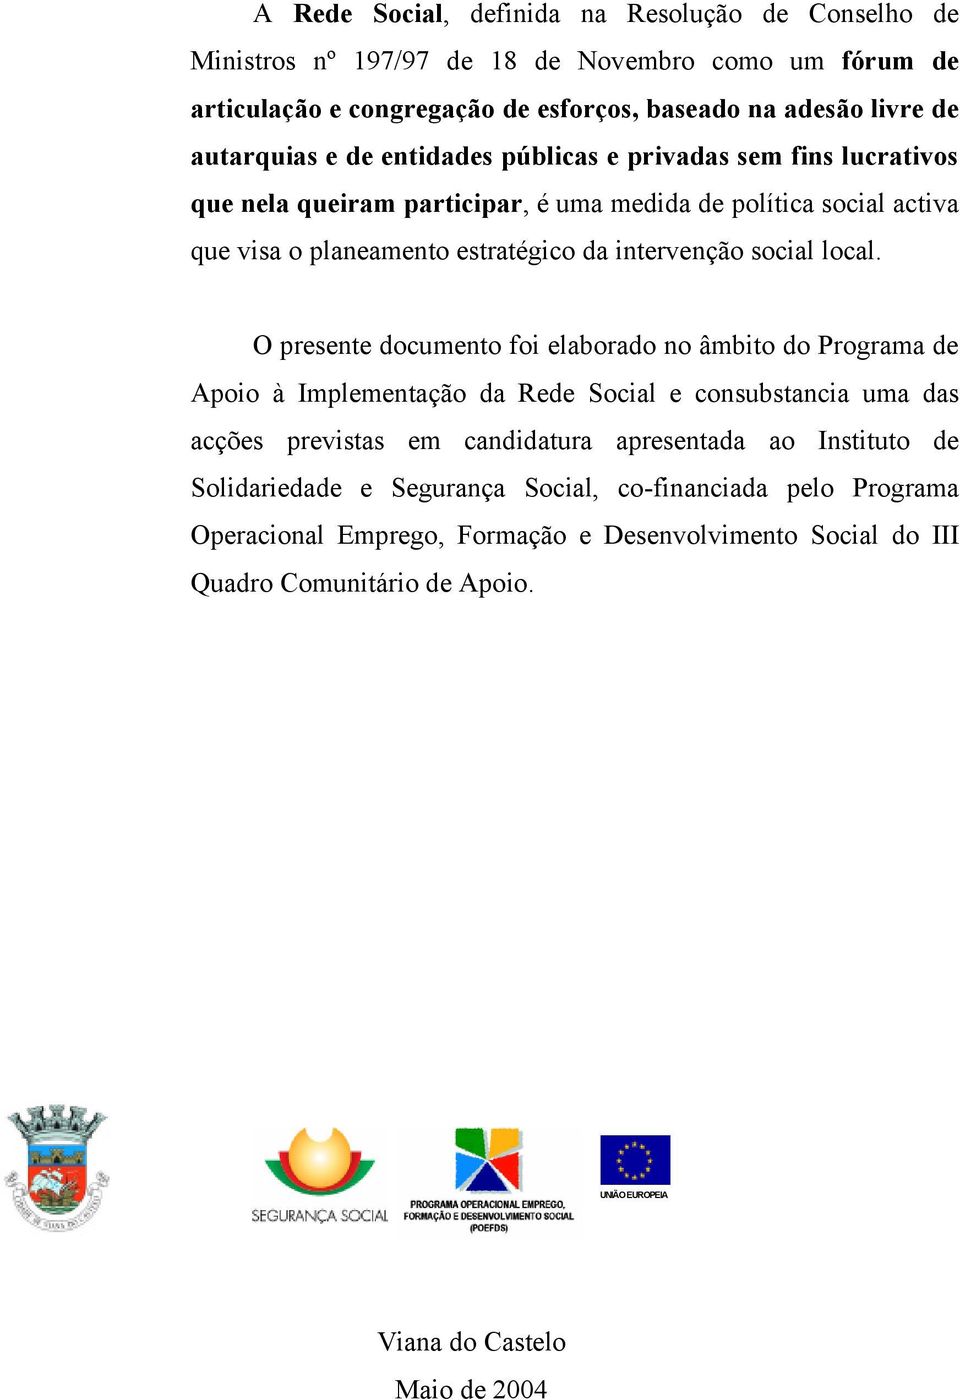 O presente documento foi elaborado no âmbito do Programa de Apoio à Implementação da Rede Social e consubstancia uma das acções previstas em candidatura apresentada ao Instituto de